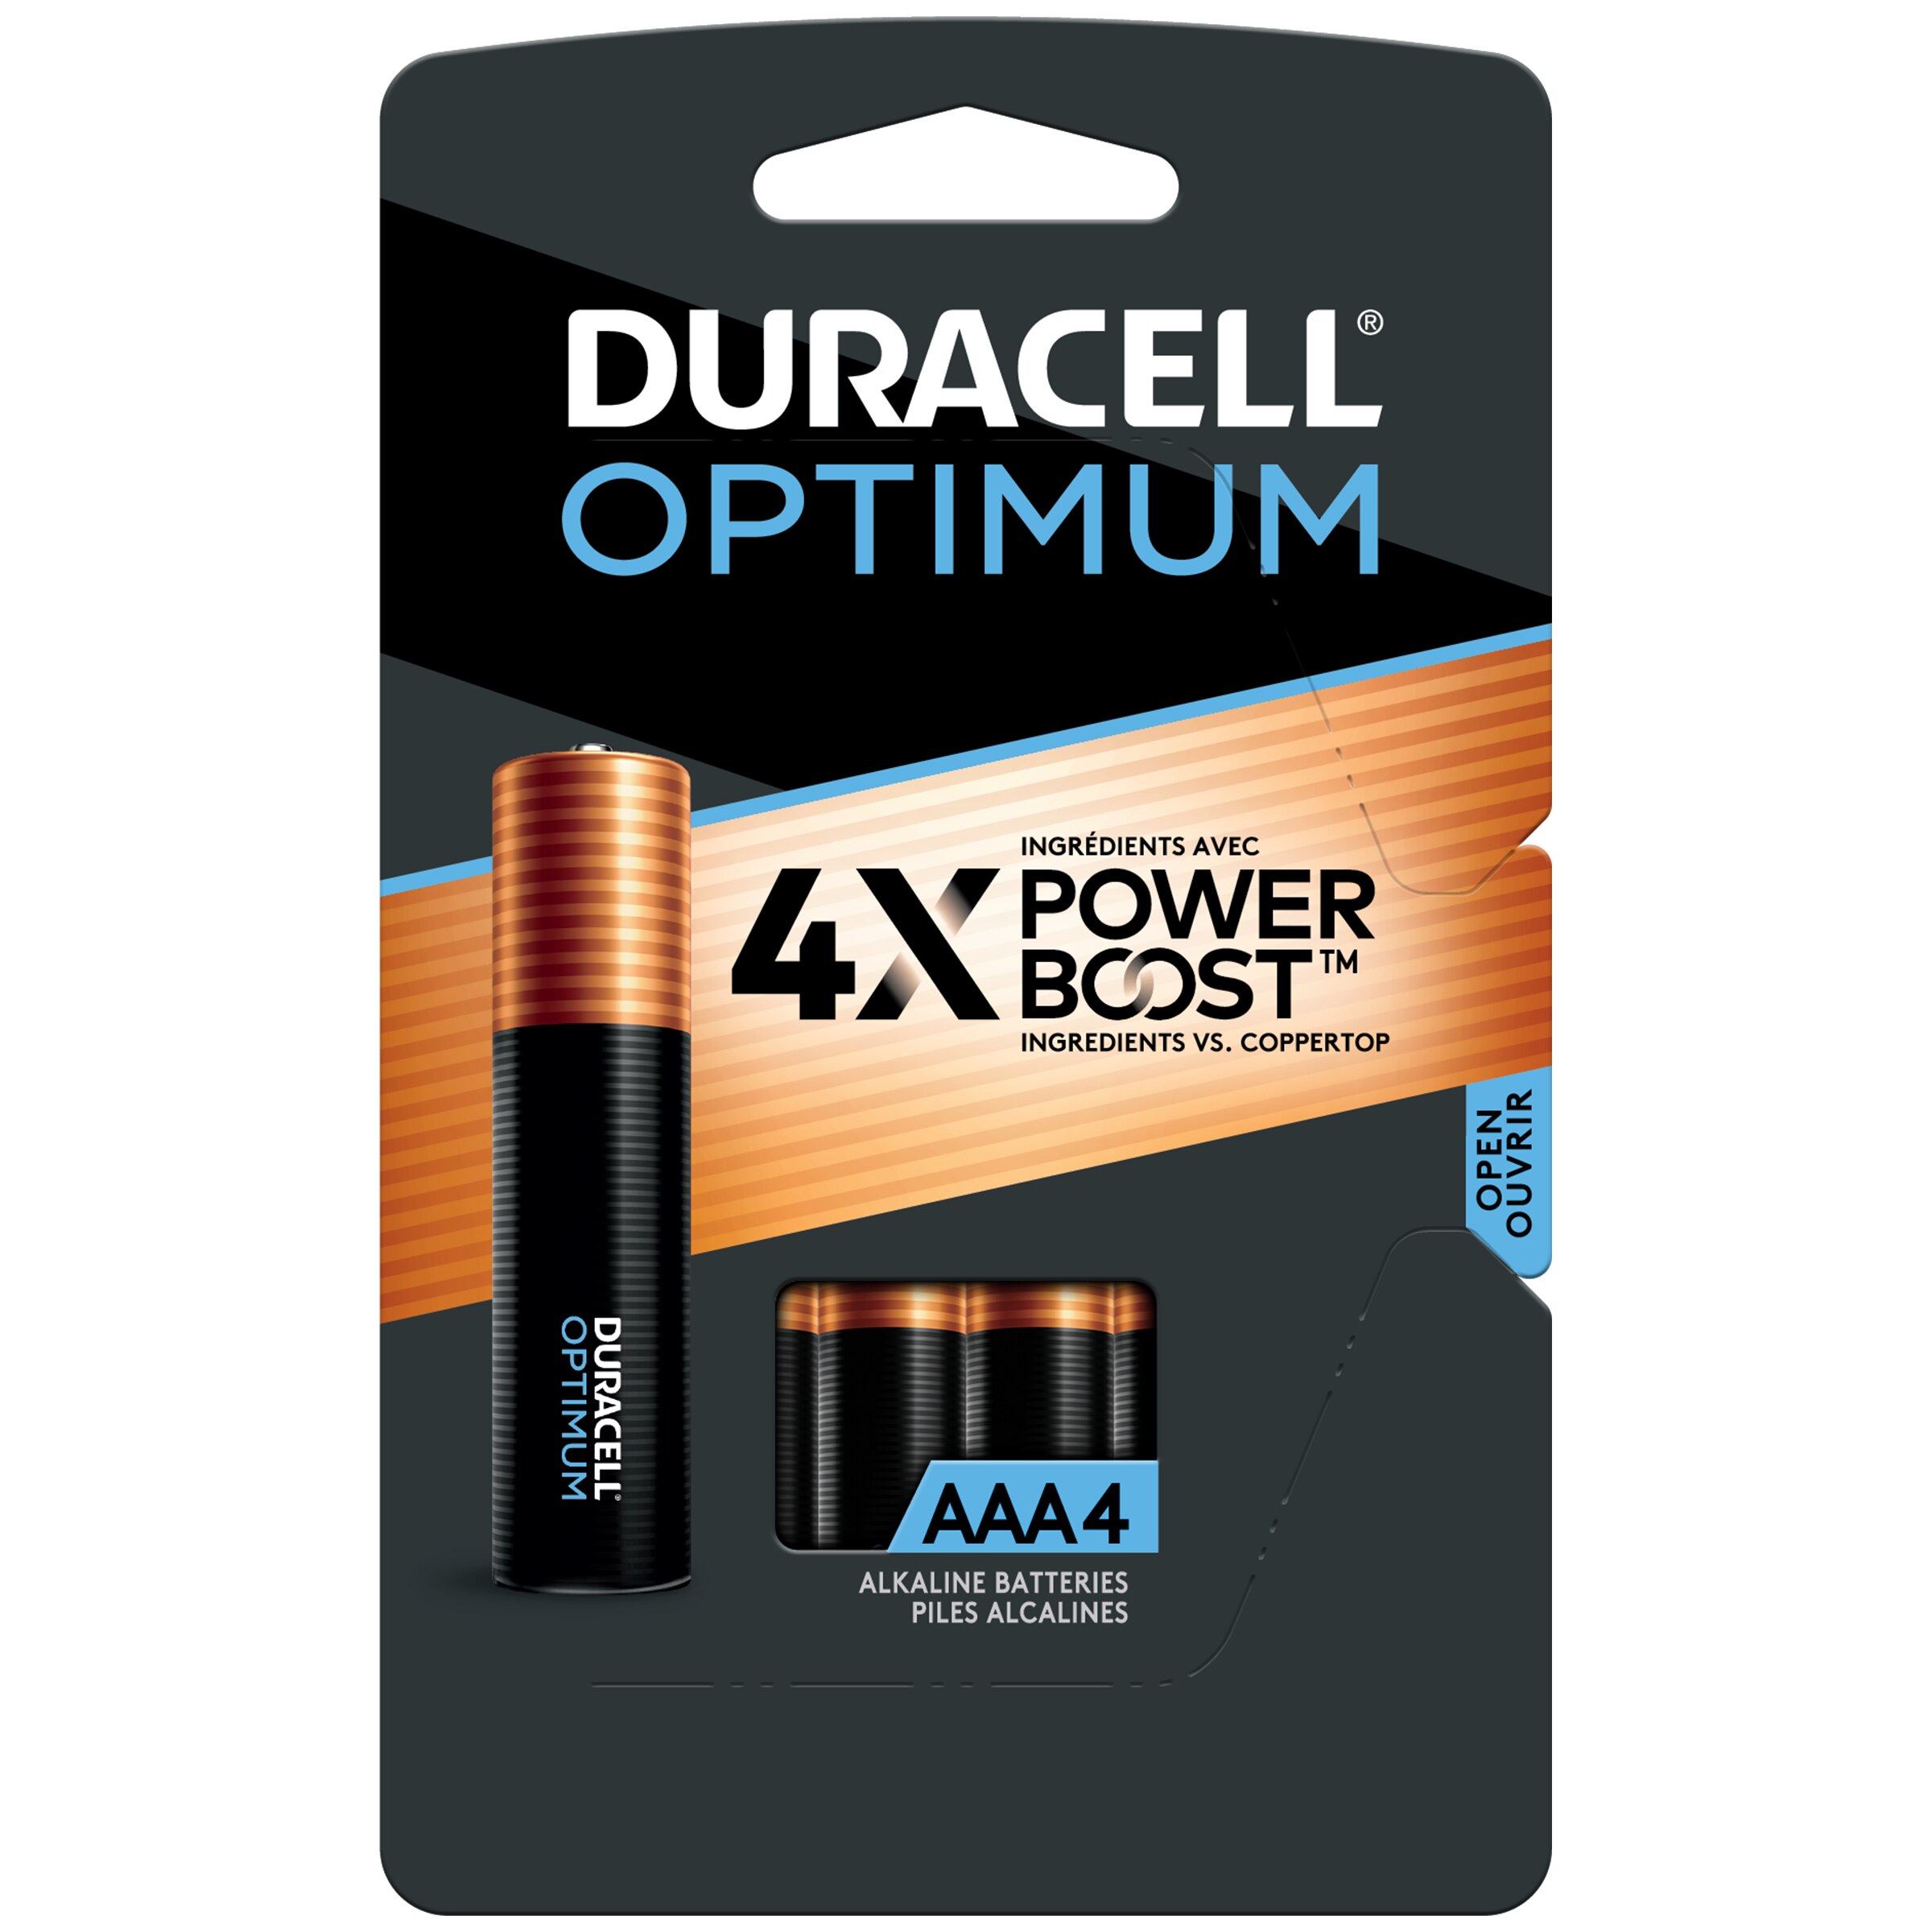 Duracell Optimum AAA Alkaline Batteries